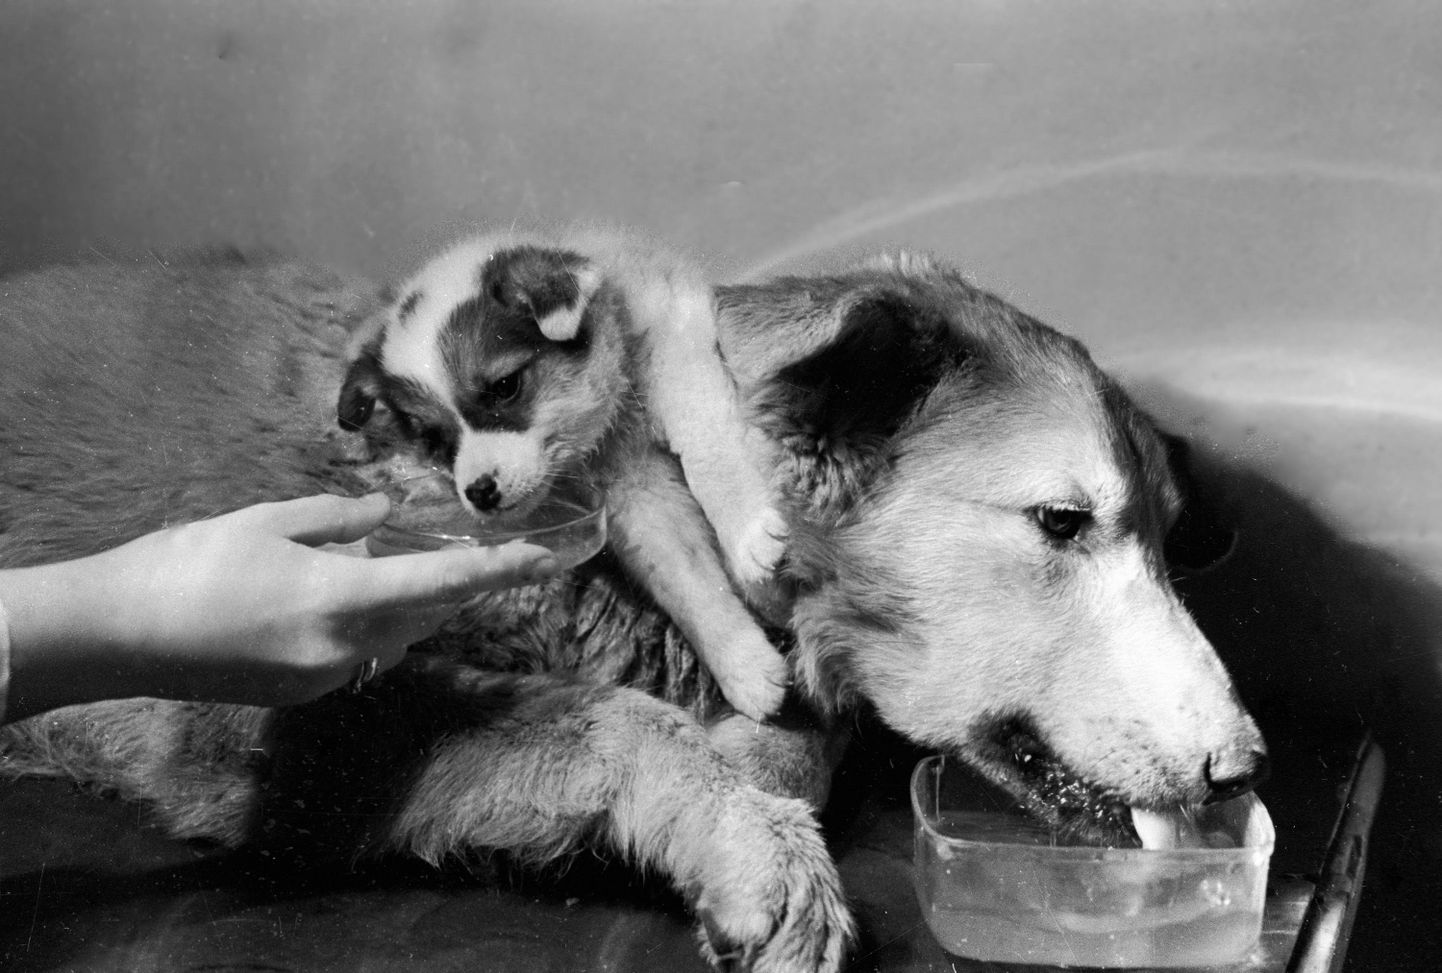 Vladimir Demikhov siirdas 1950ndatel noore koera keha ülemise osa teise koera õlgadele. Kahe peaga koera mõlemad pead liigutasid, nägid ja isegi lakkusid vett.